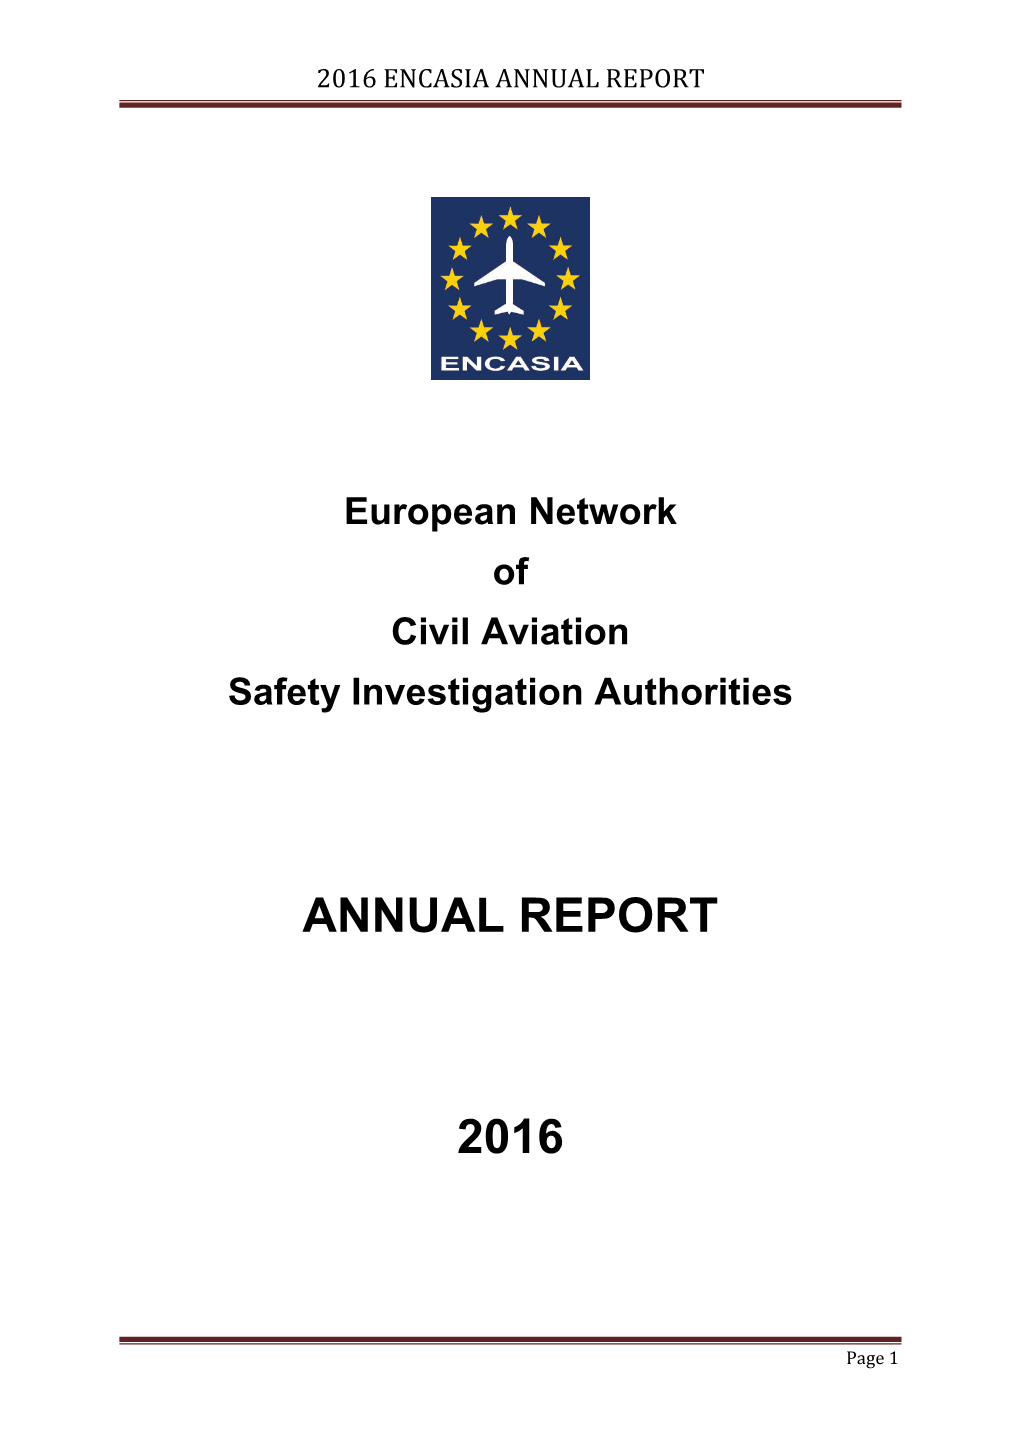 ENCASIA 2016 Annual Report